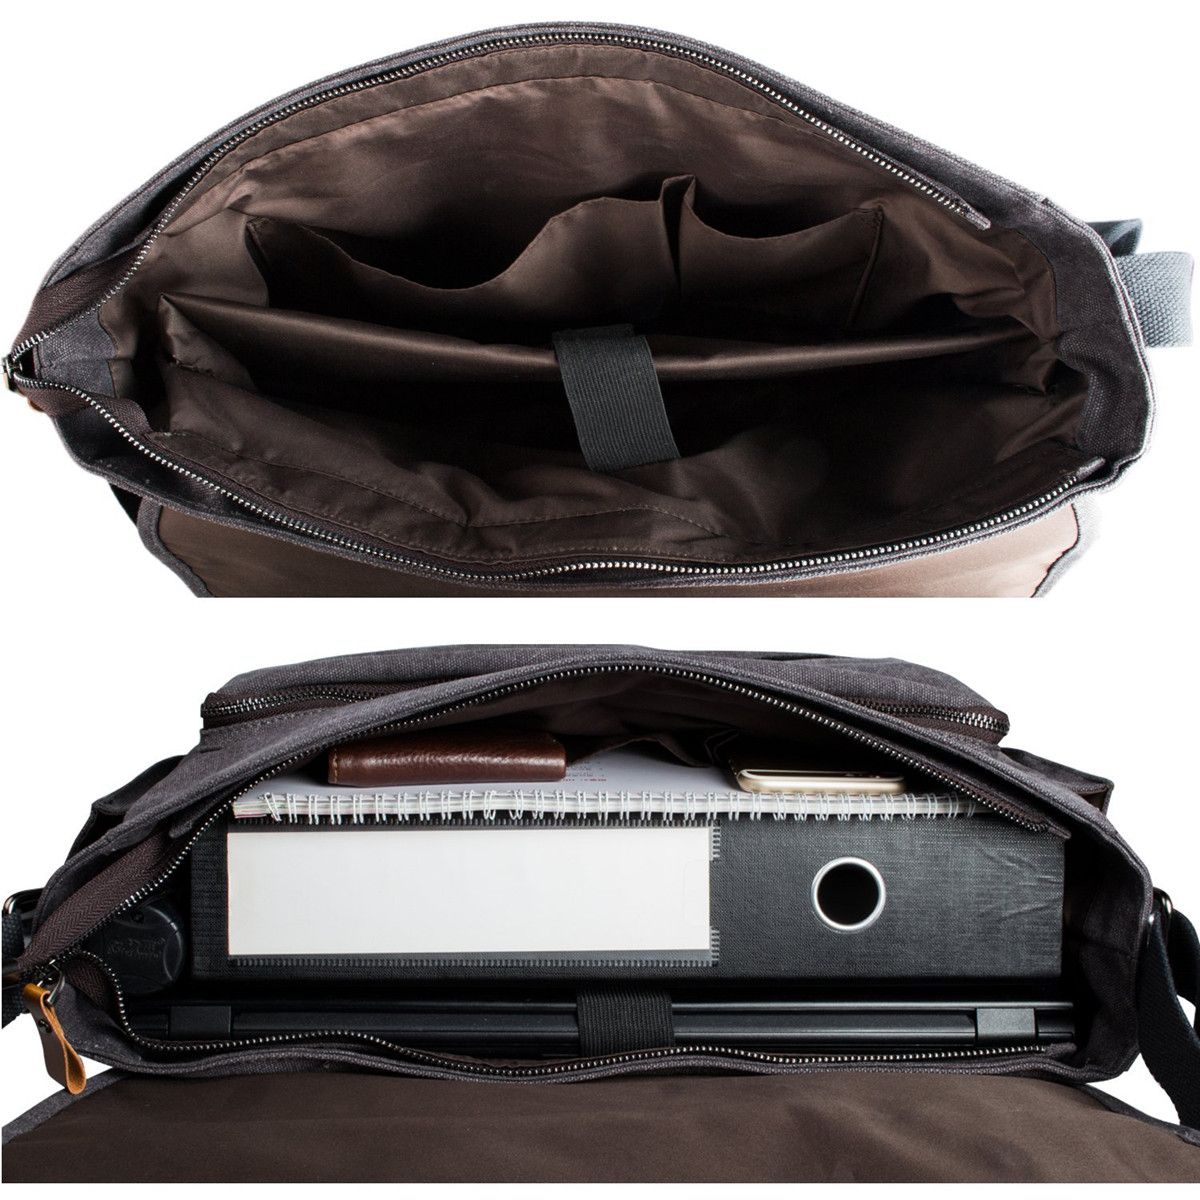 Canvas-Business-Laptop-Bag-Men-Crossbody-Computer-Bag-Shoulder-Bag-Handbag-for-15-inch-Notebook-1281549